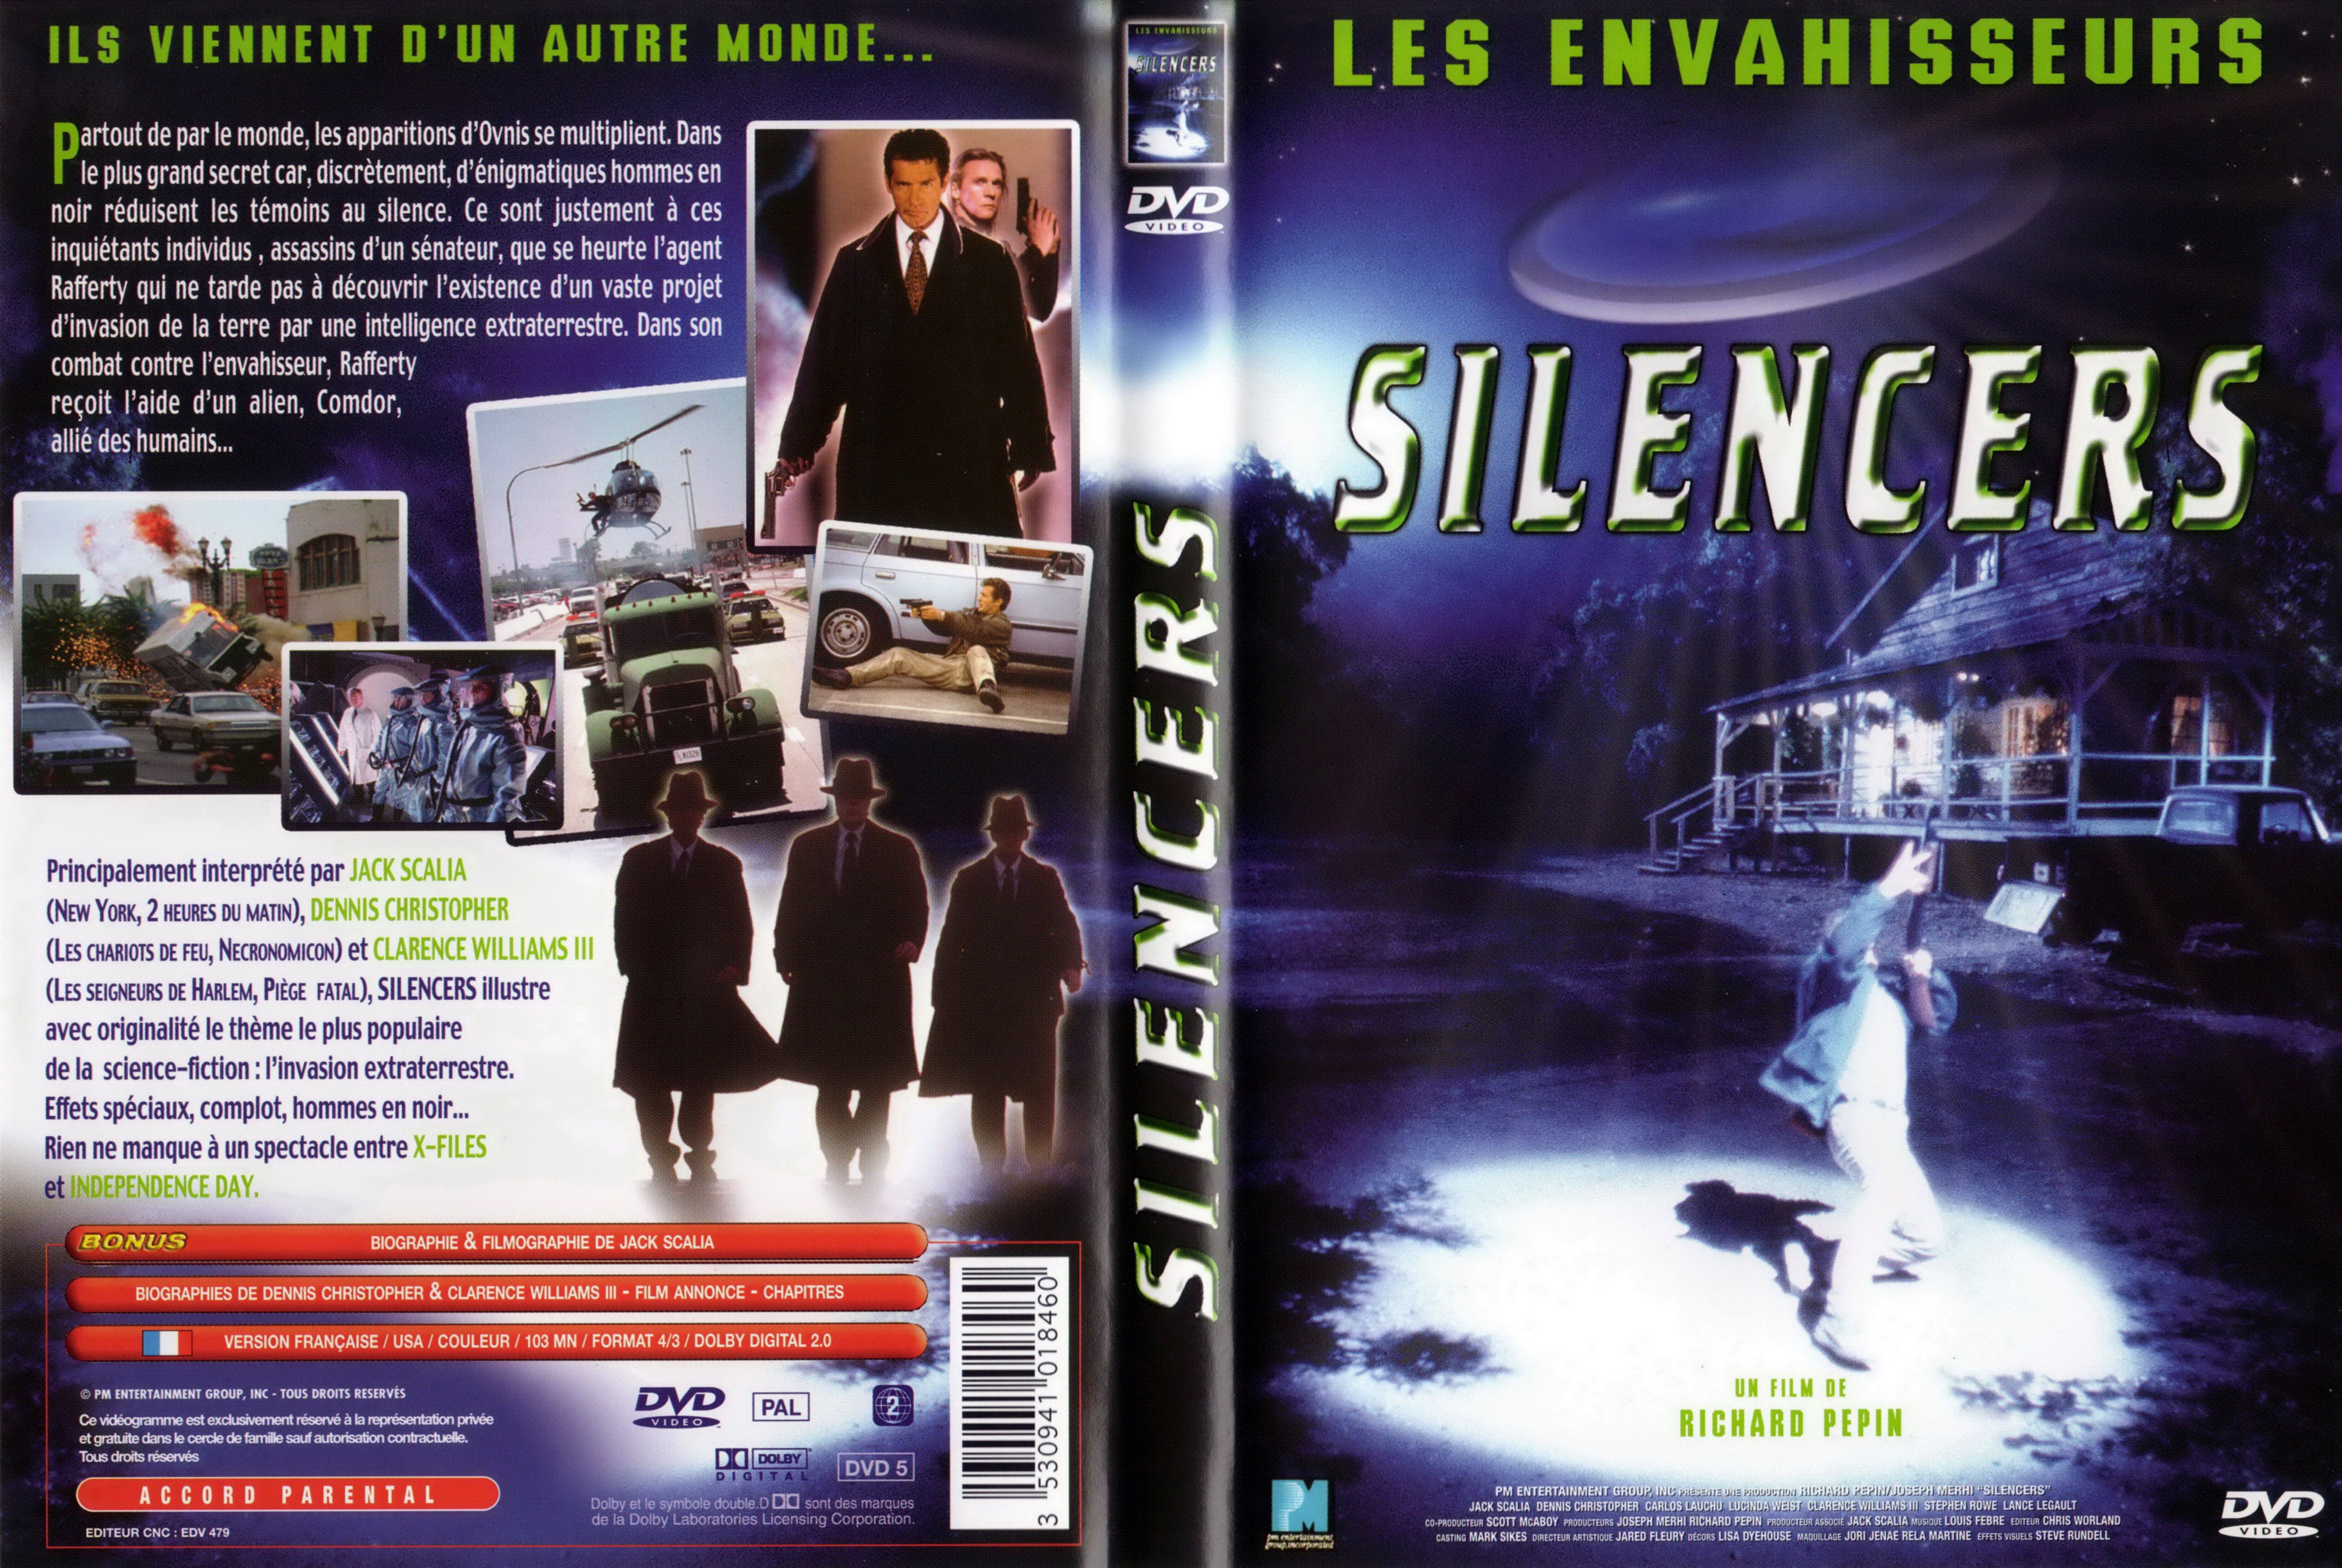 Jaquette DVD Silencers v2